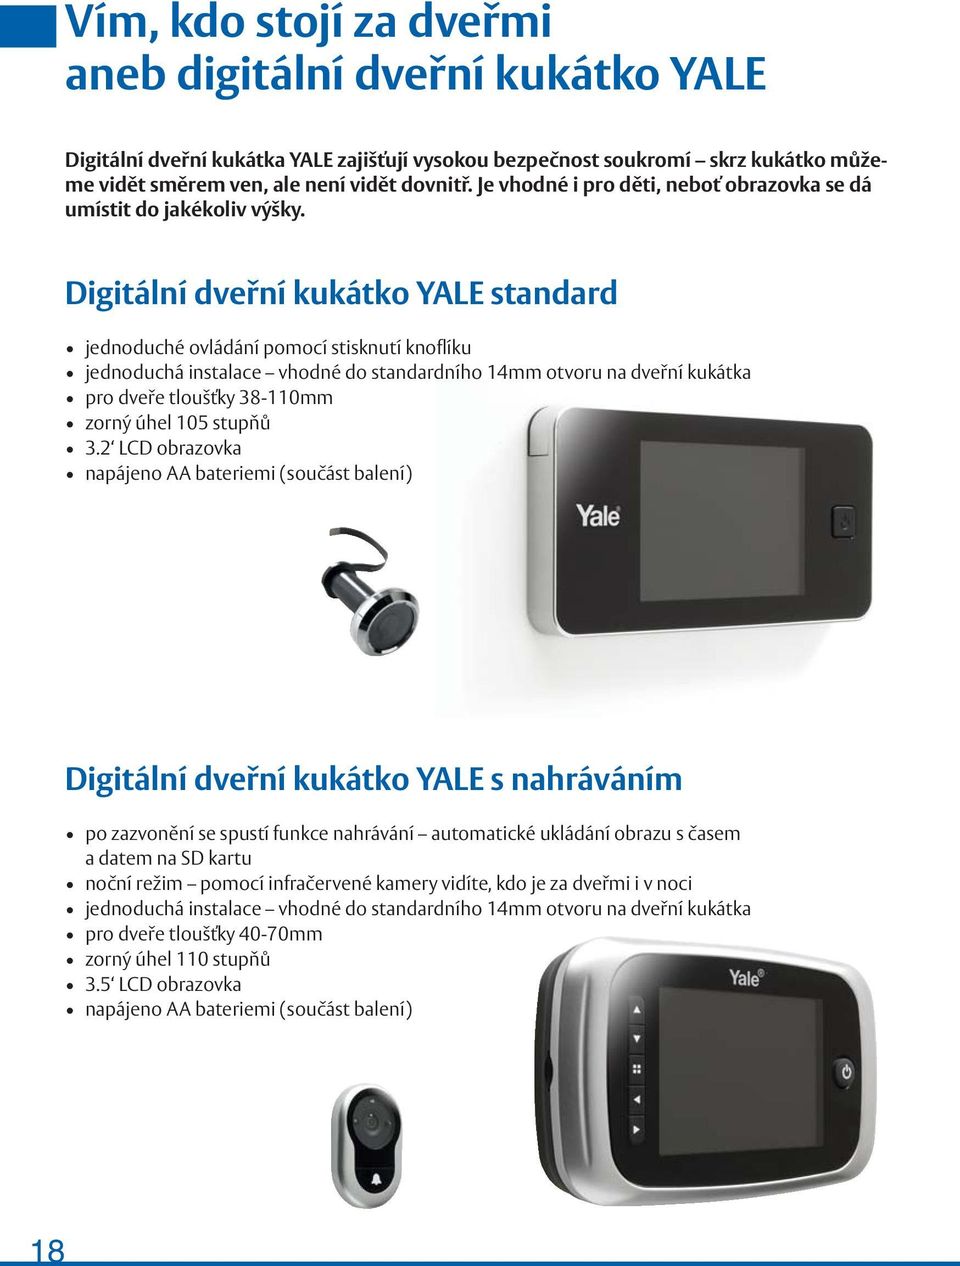 Digitální dveřní kukátko YALE standard jednoduché ovládání pomocí stisknutí knoflíku jednoduchá instalace vhodné do standardního 14mm otvoru na dveřní kukátka pro dveře tloušťky 38-110mm zorný úhel